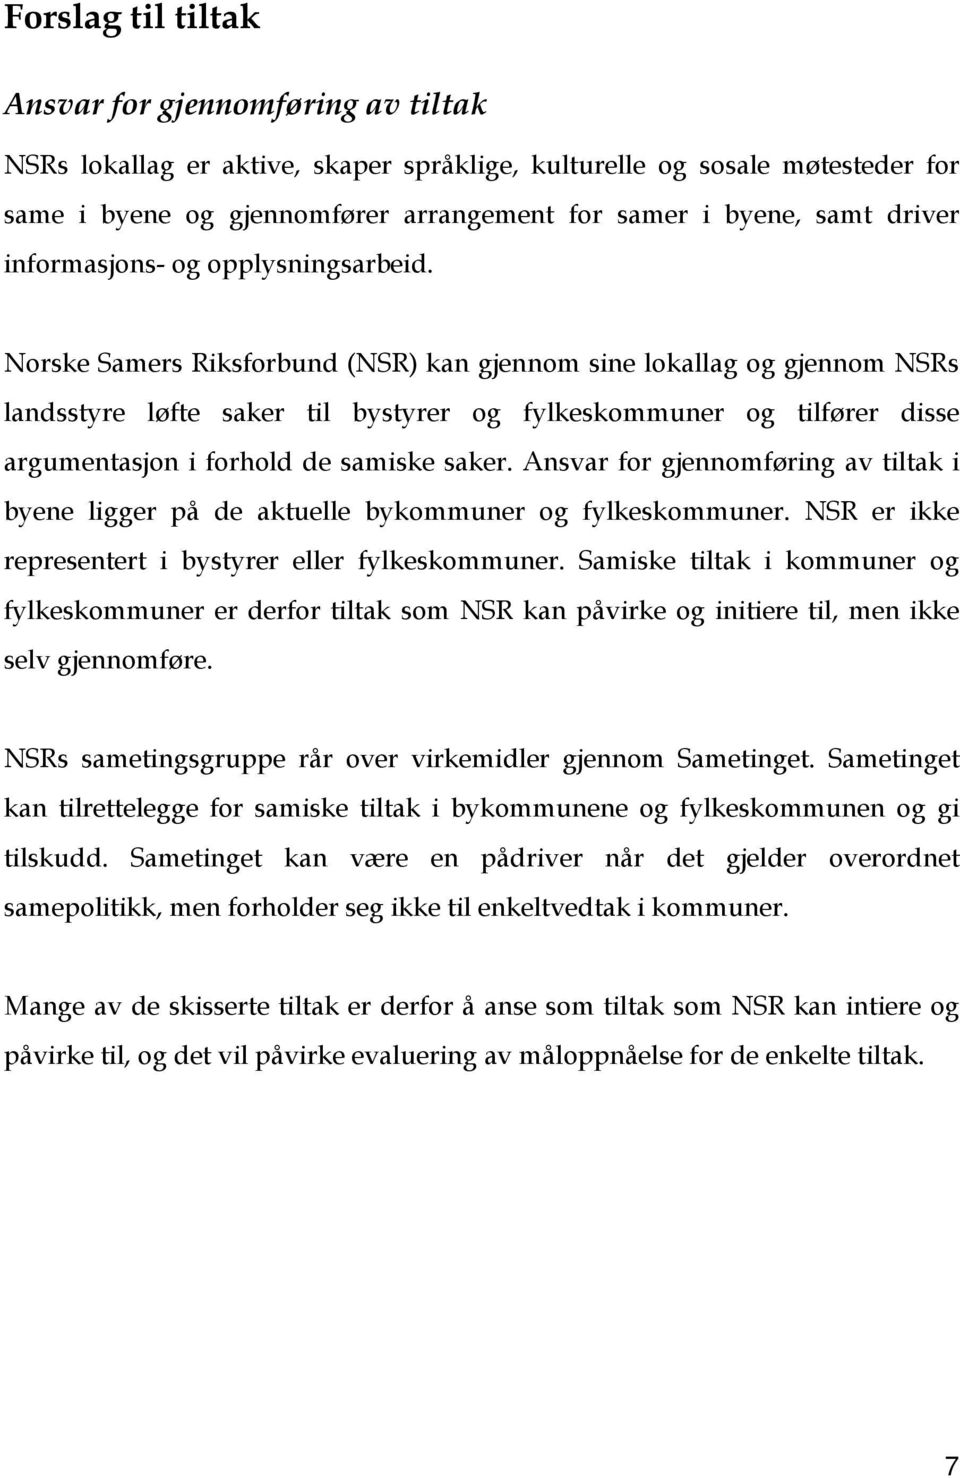 Norske Samers Riksforbund (NSR) kan gjennom sine lokallag og gjennom NSRs landsstyre løfte saker til bystyrer og fylkeskommuner og tilfører disse argumentasjon i forhold de samiske saker.